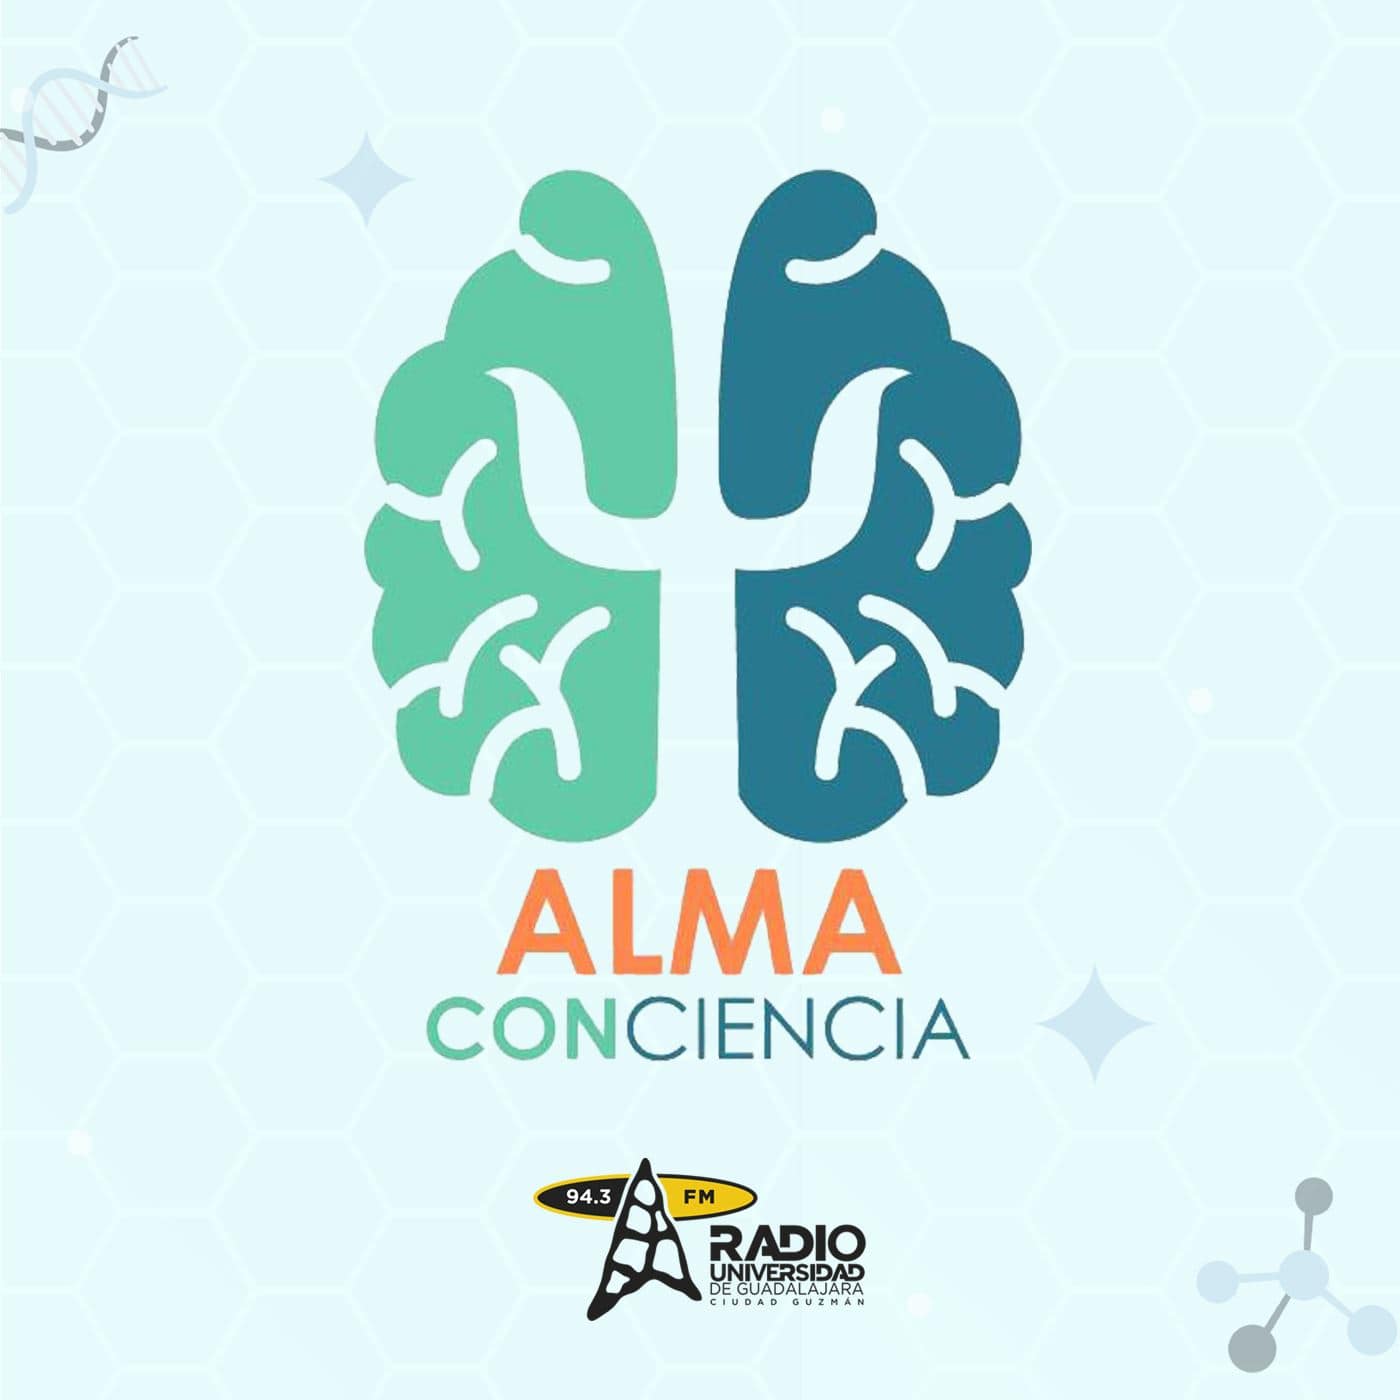 Alma Con-Ciencia, Emociones y música, su influencia en el comportamiento de las personas.